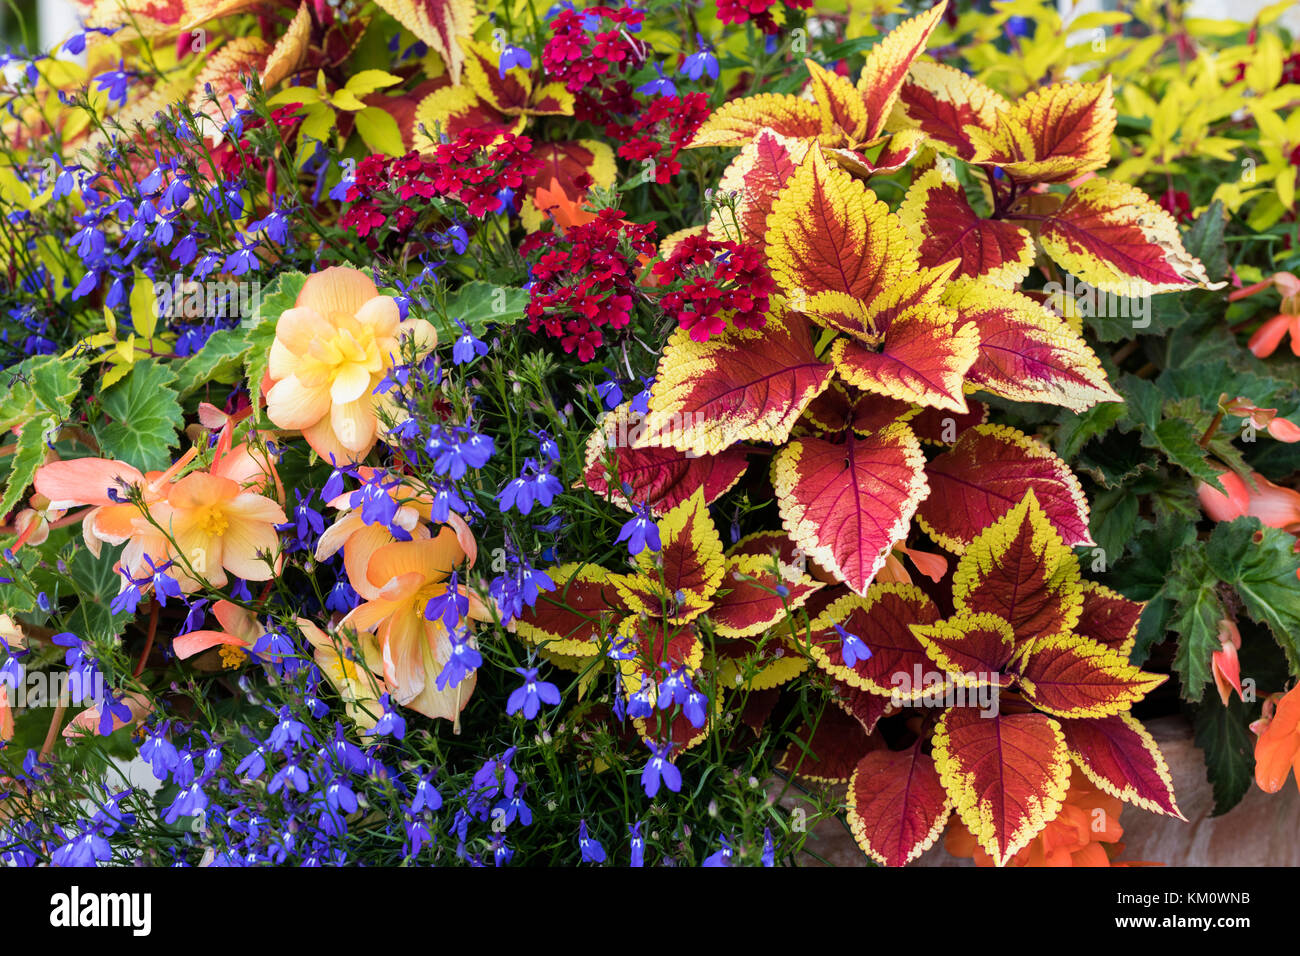 Nahaufnahme einer sehr bunten Darstellung von Sommerblumen und Laub in einem Container gepflanzt, England, Großbritannien Stockfoto